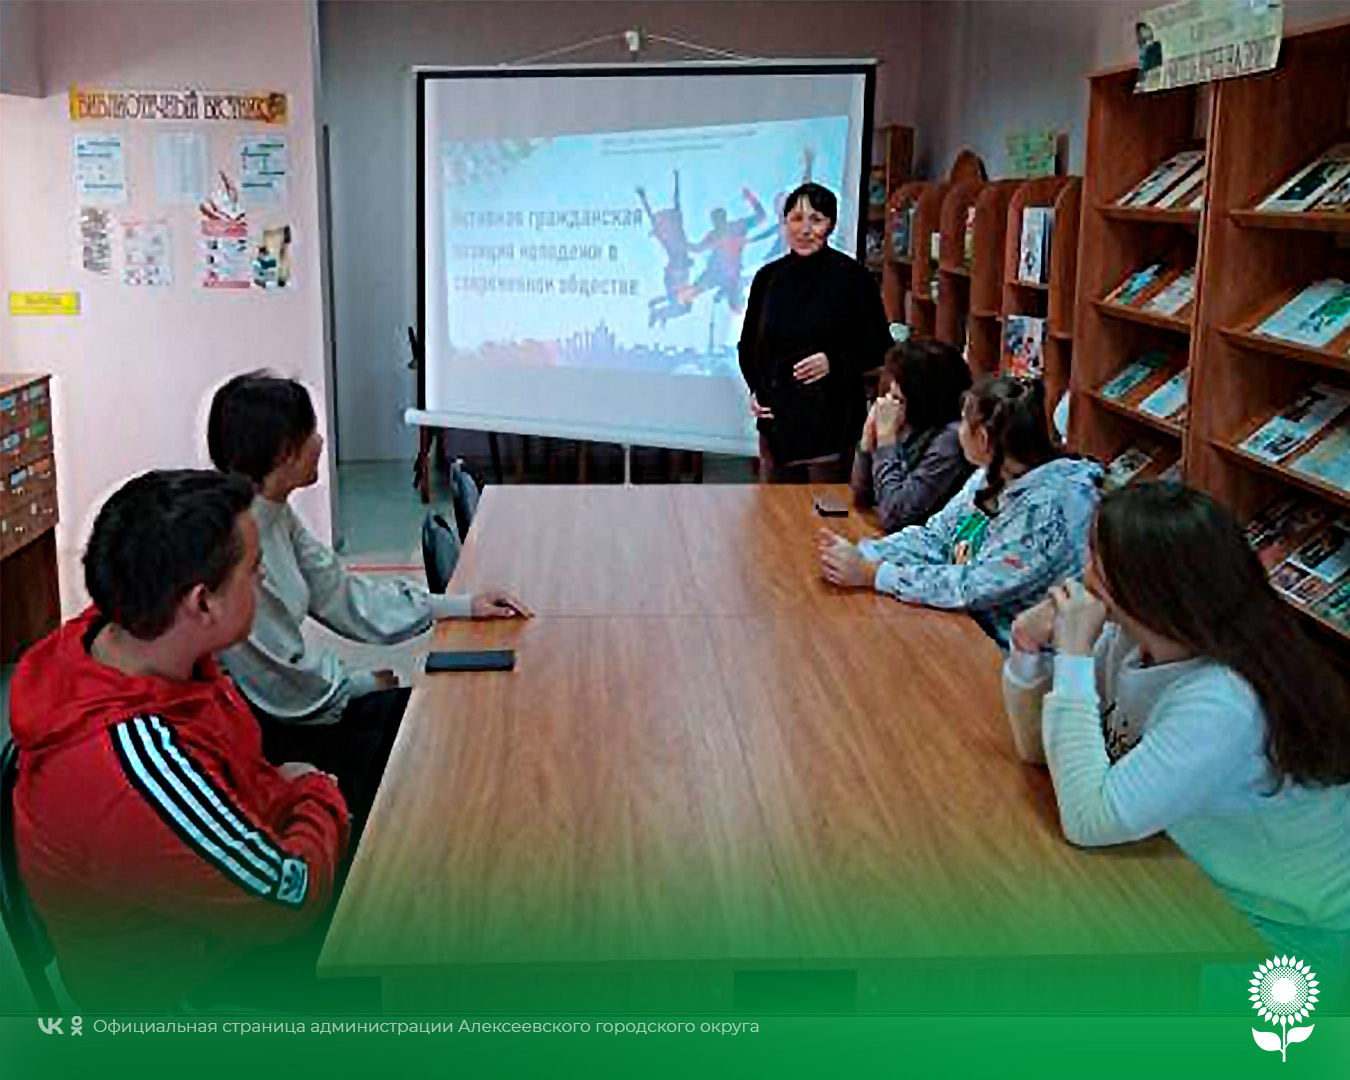 В модельной библиотеке села Красное состоялся диспут «Активная гражданская позиция молодежи в современном обществе».